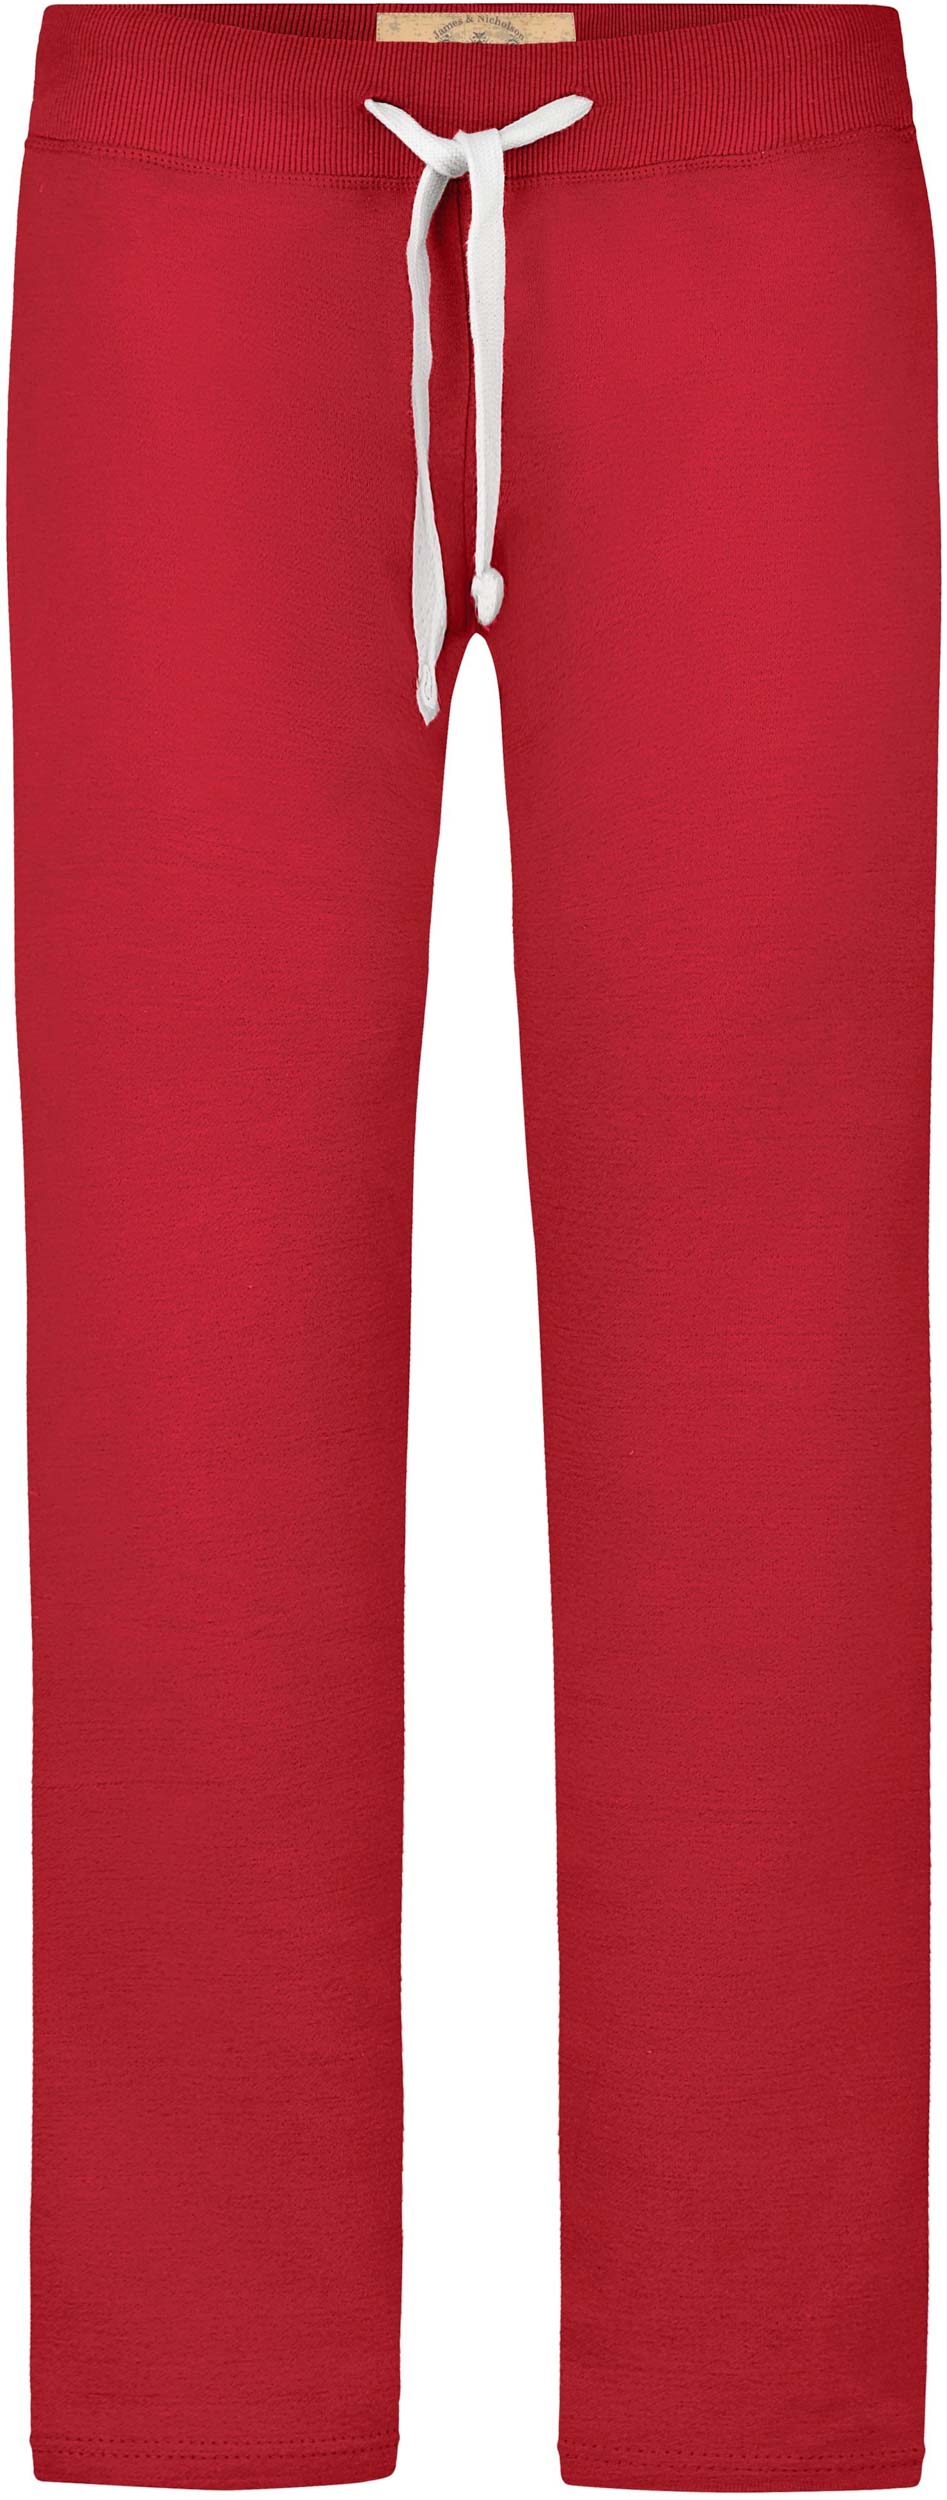 Dámské tepláky James & Nicholson Vintage Pants|XL